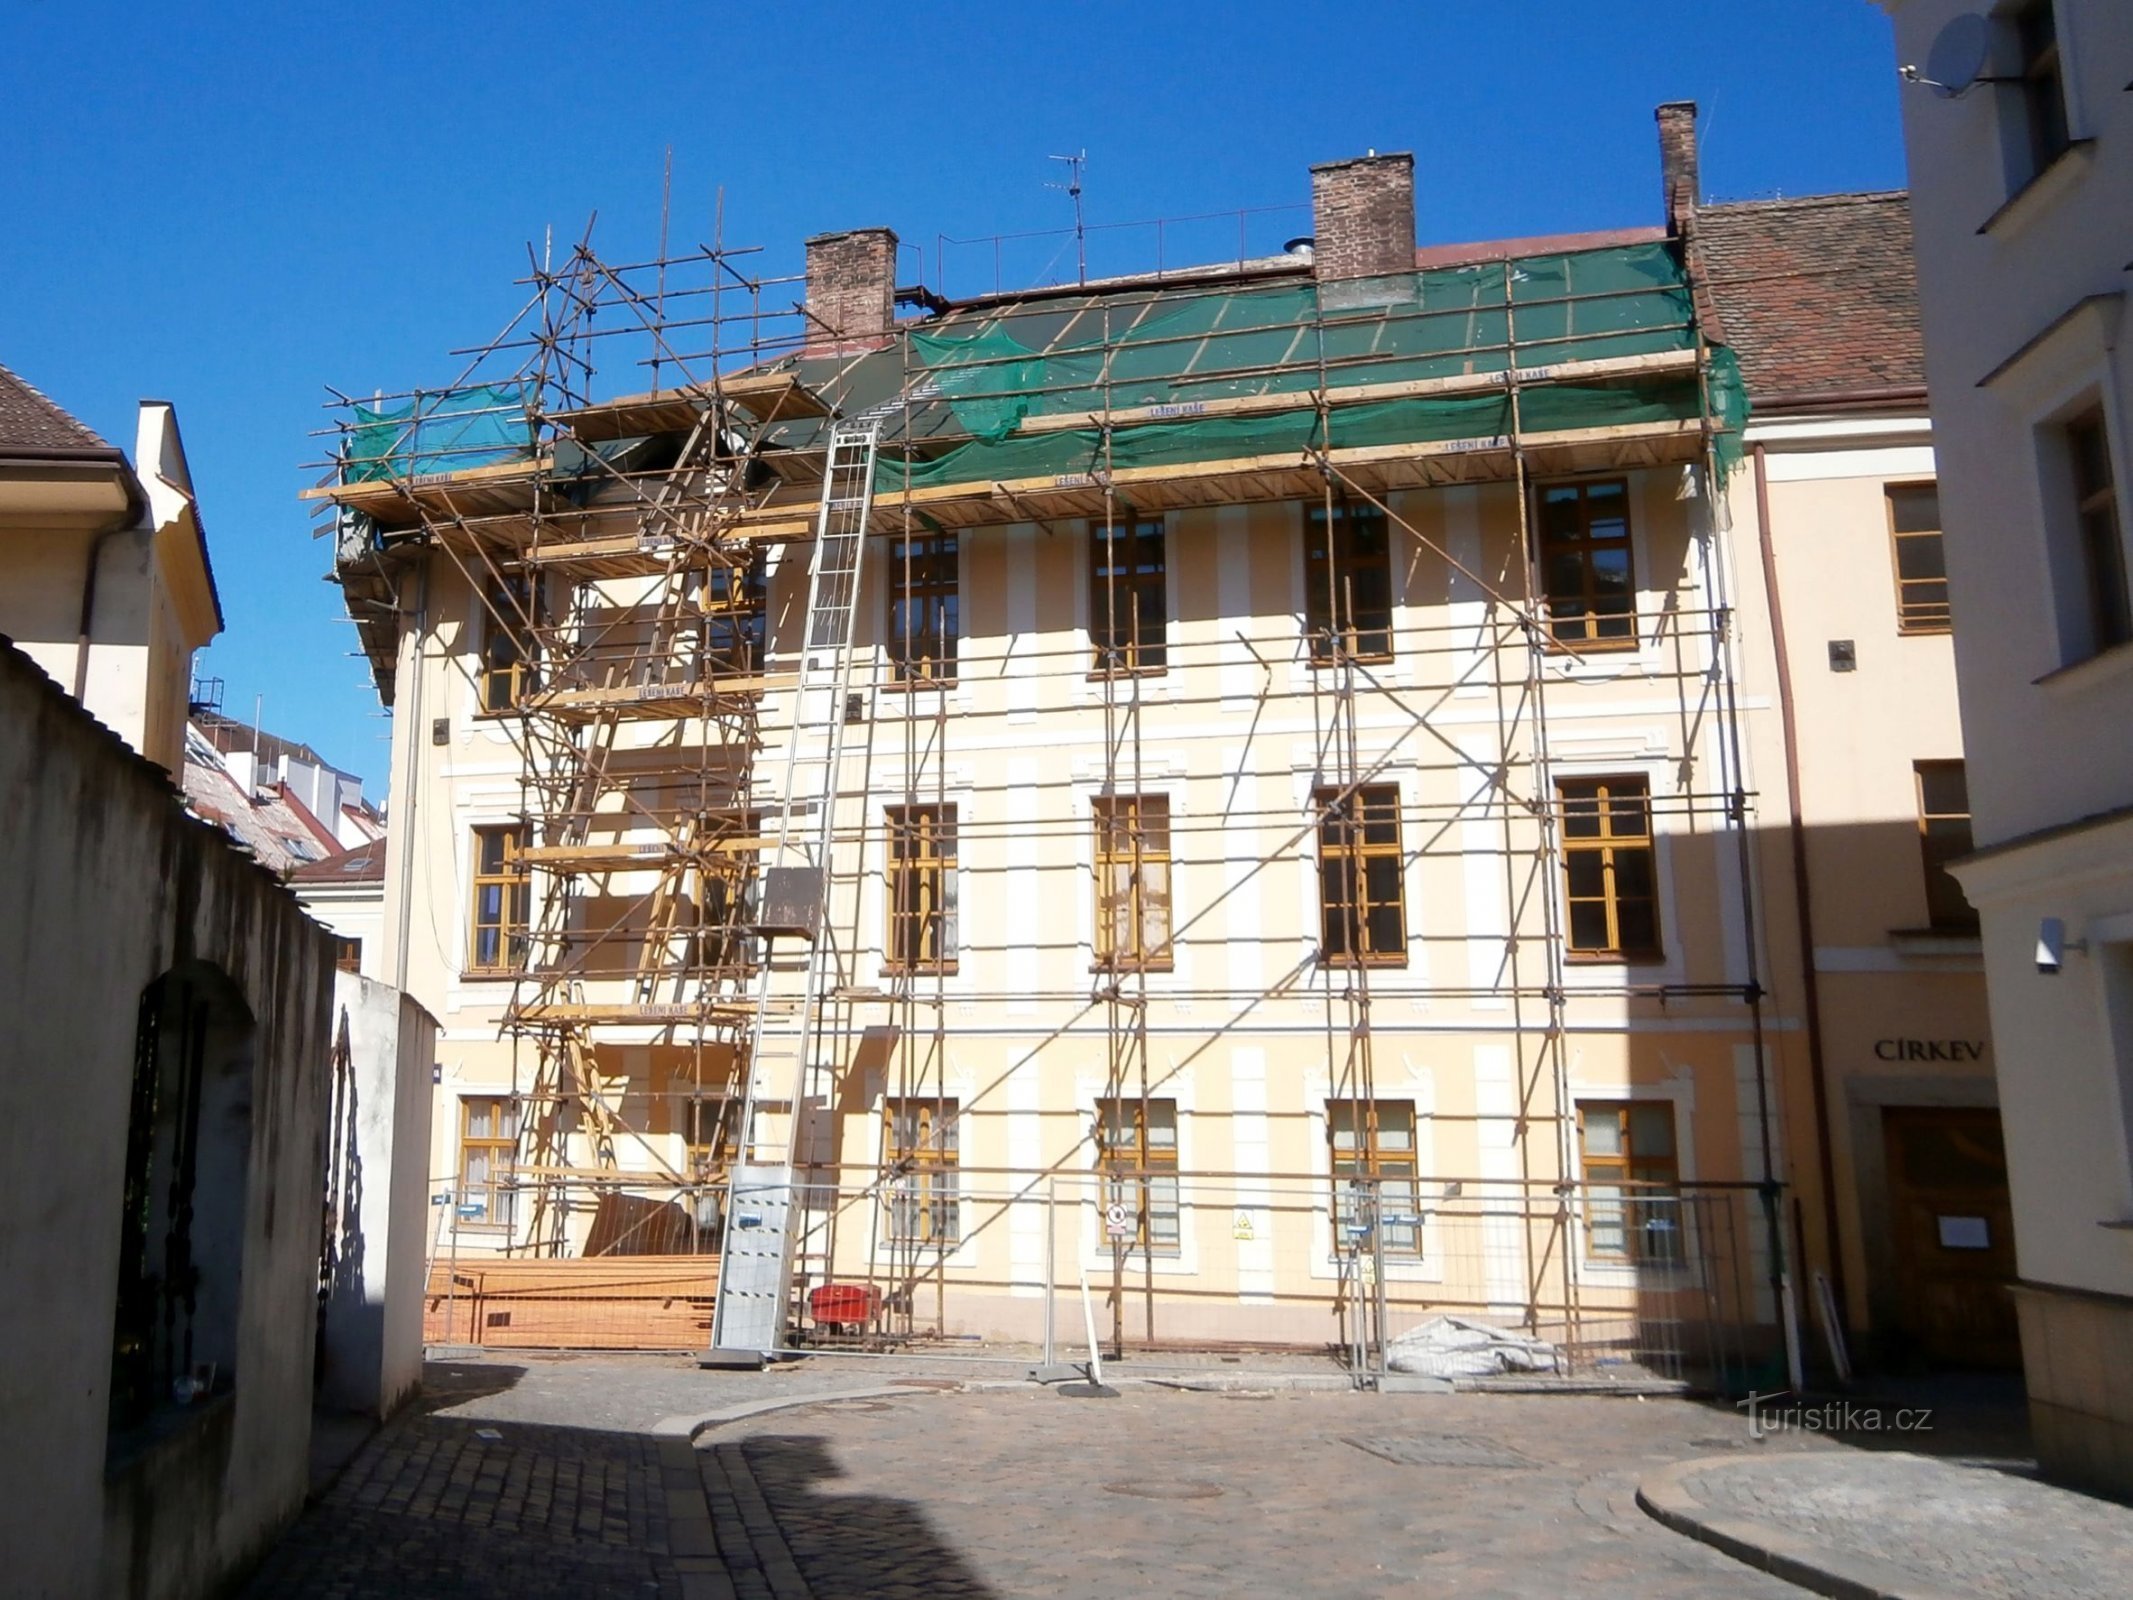 修复 89 号屋顶（Hradec Králové，18.6.2016/XNUMX/XNUMX）